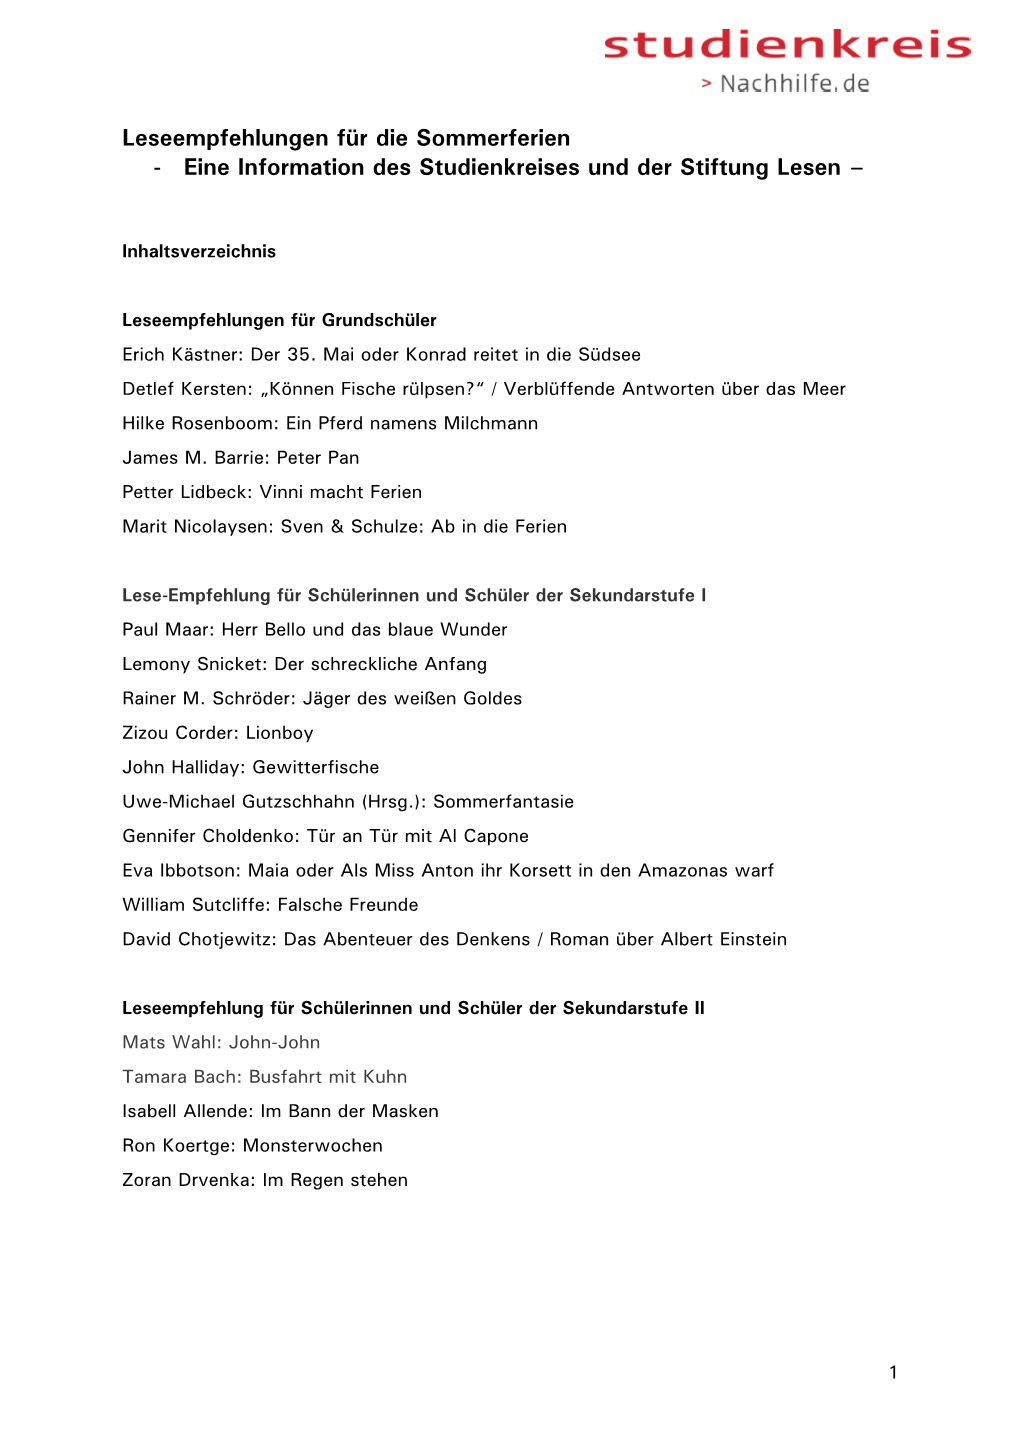 Leseliste Für Die Sommerferien Von Studienkreis Und Stiftung Lesen